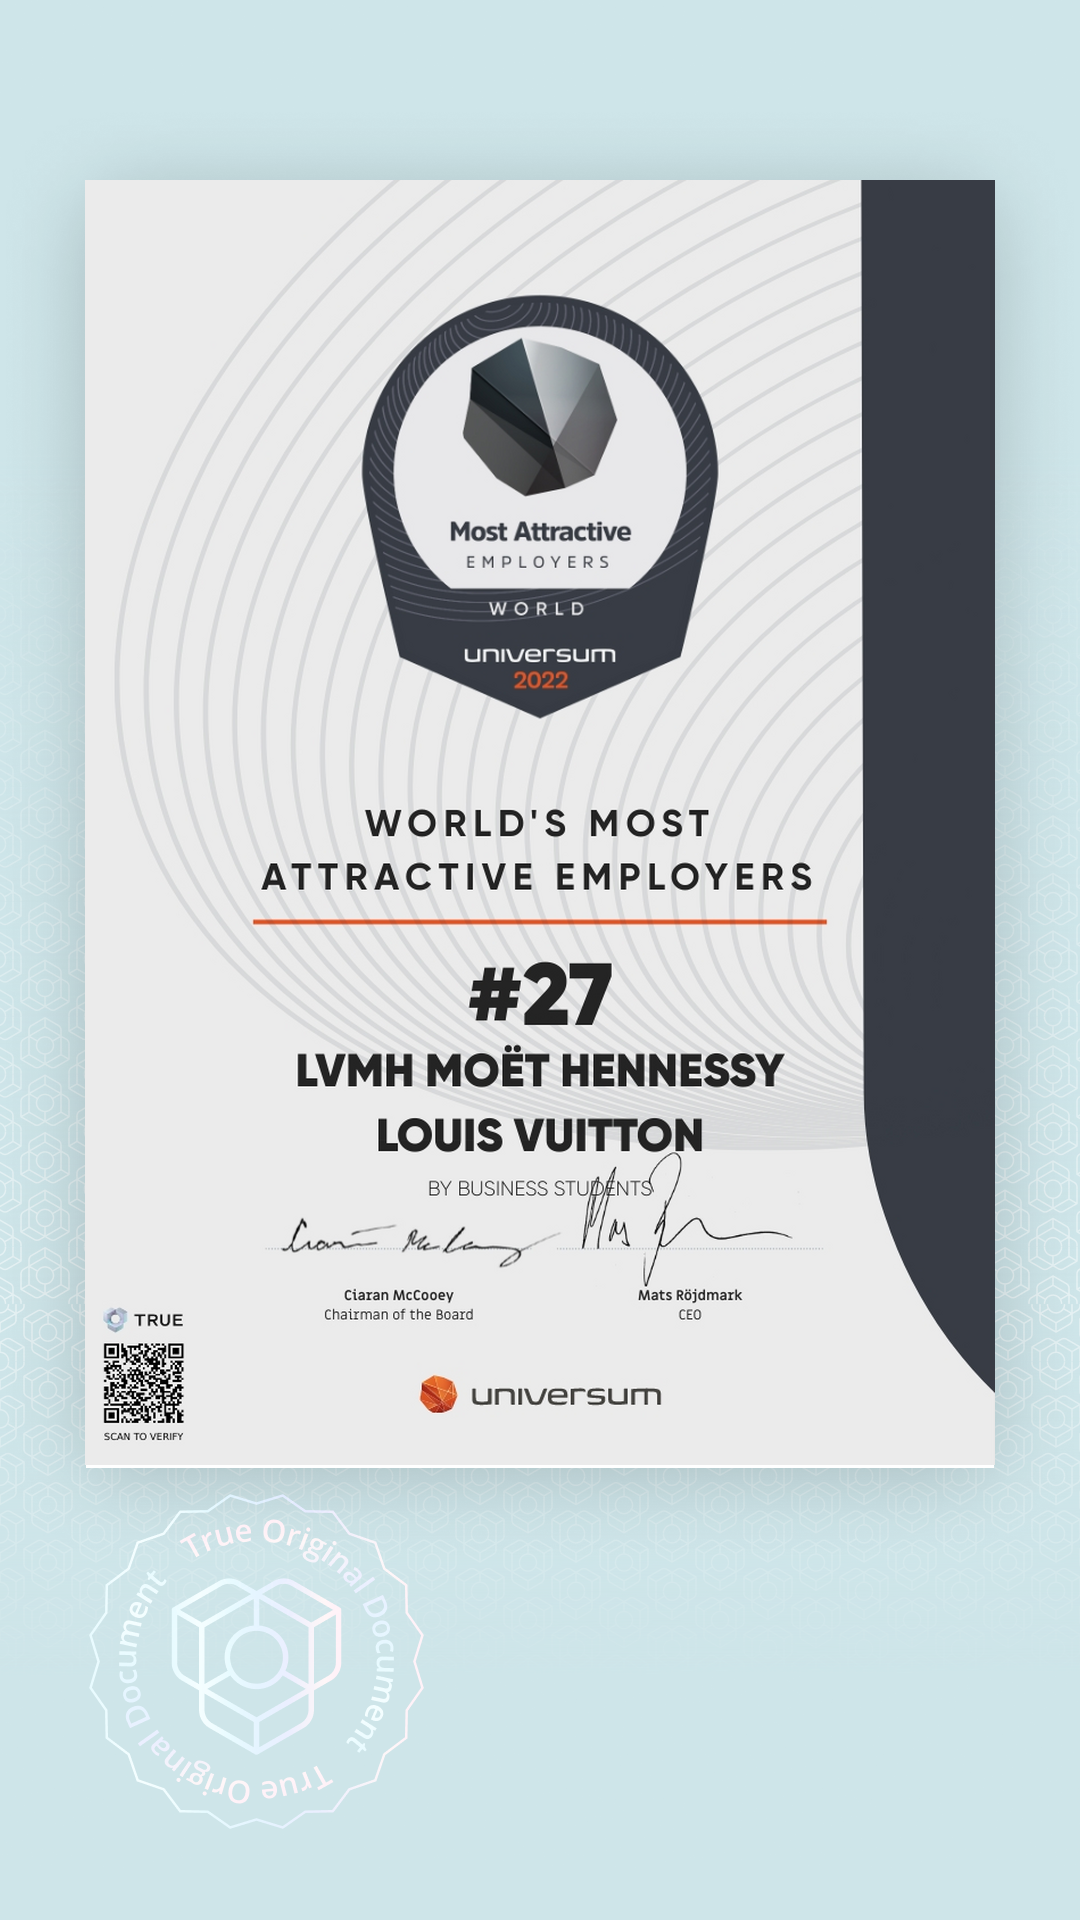 Finshots on LinkedIn: Last week, LVMH (Louis Vuitton Moet Hennessy